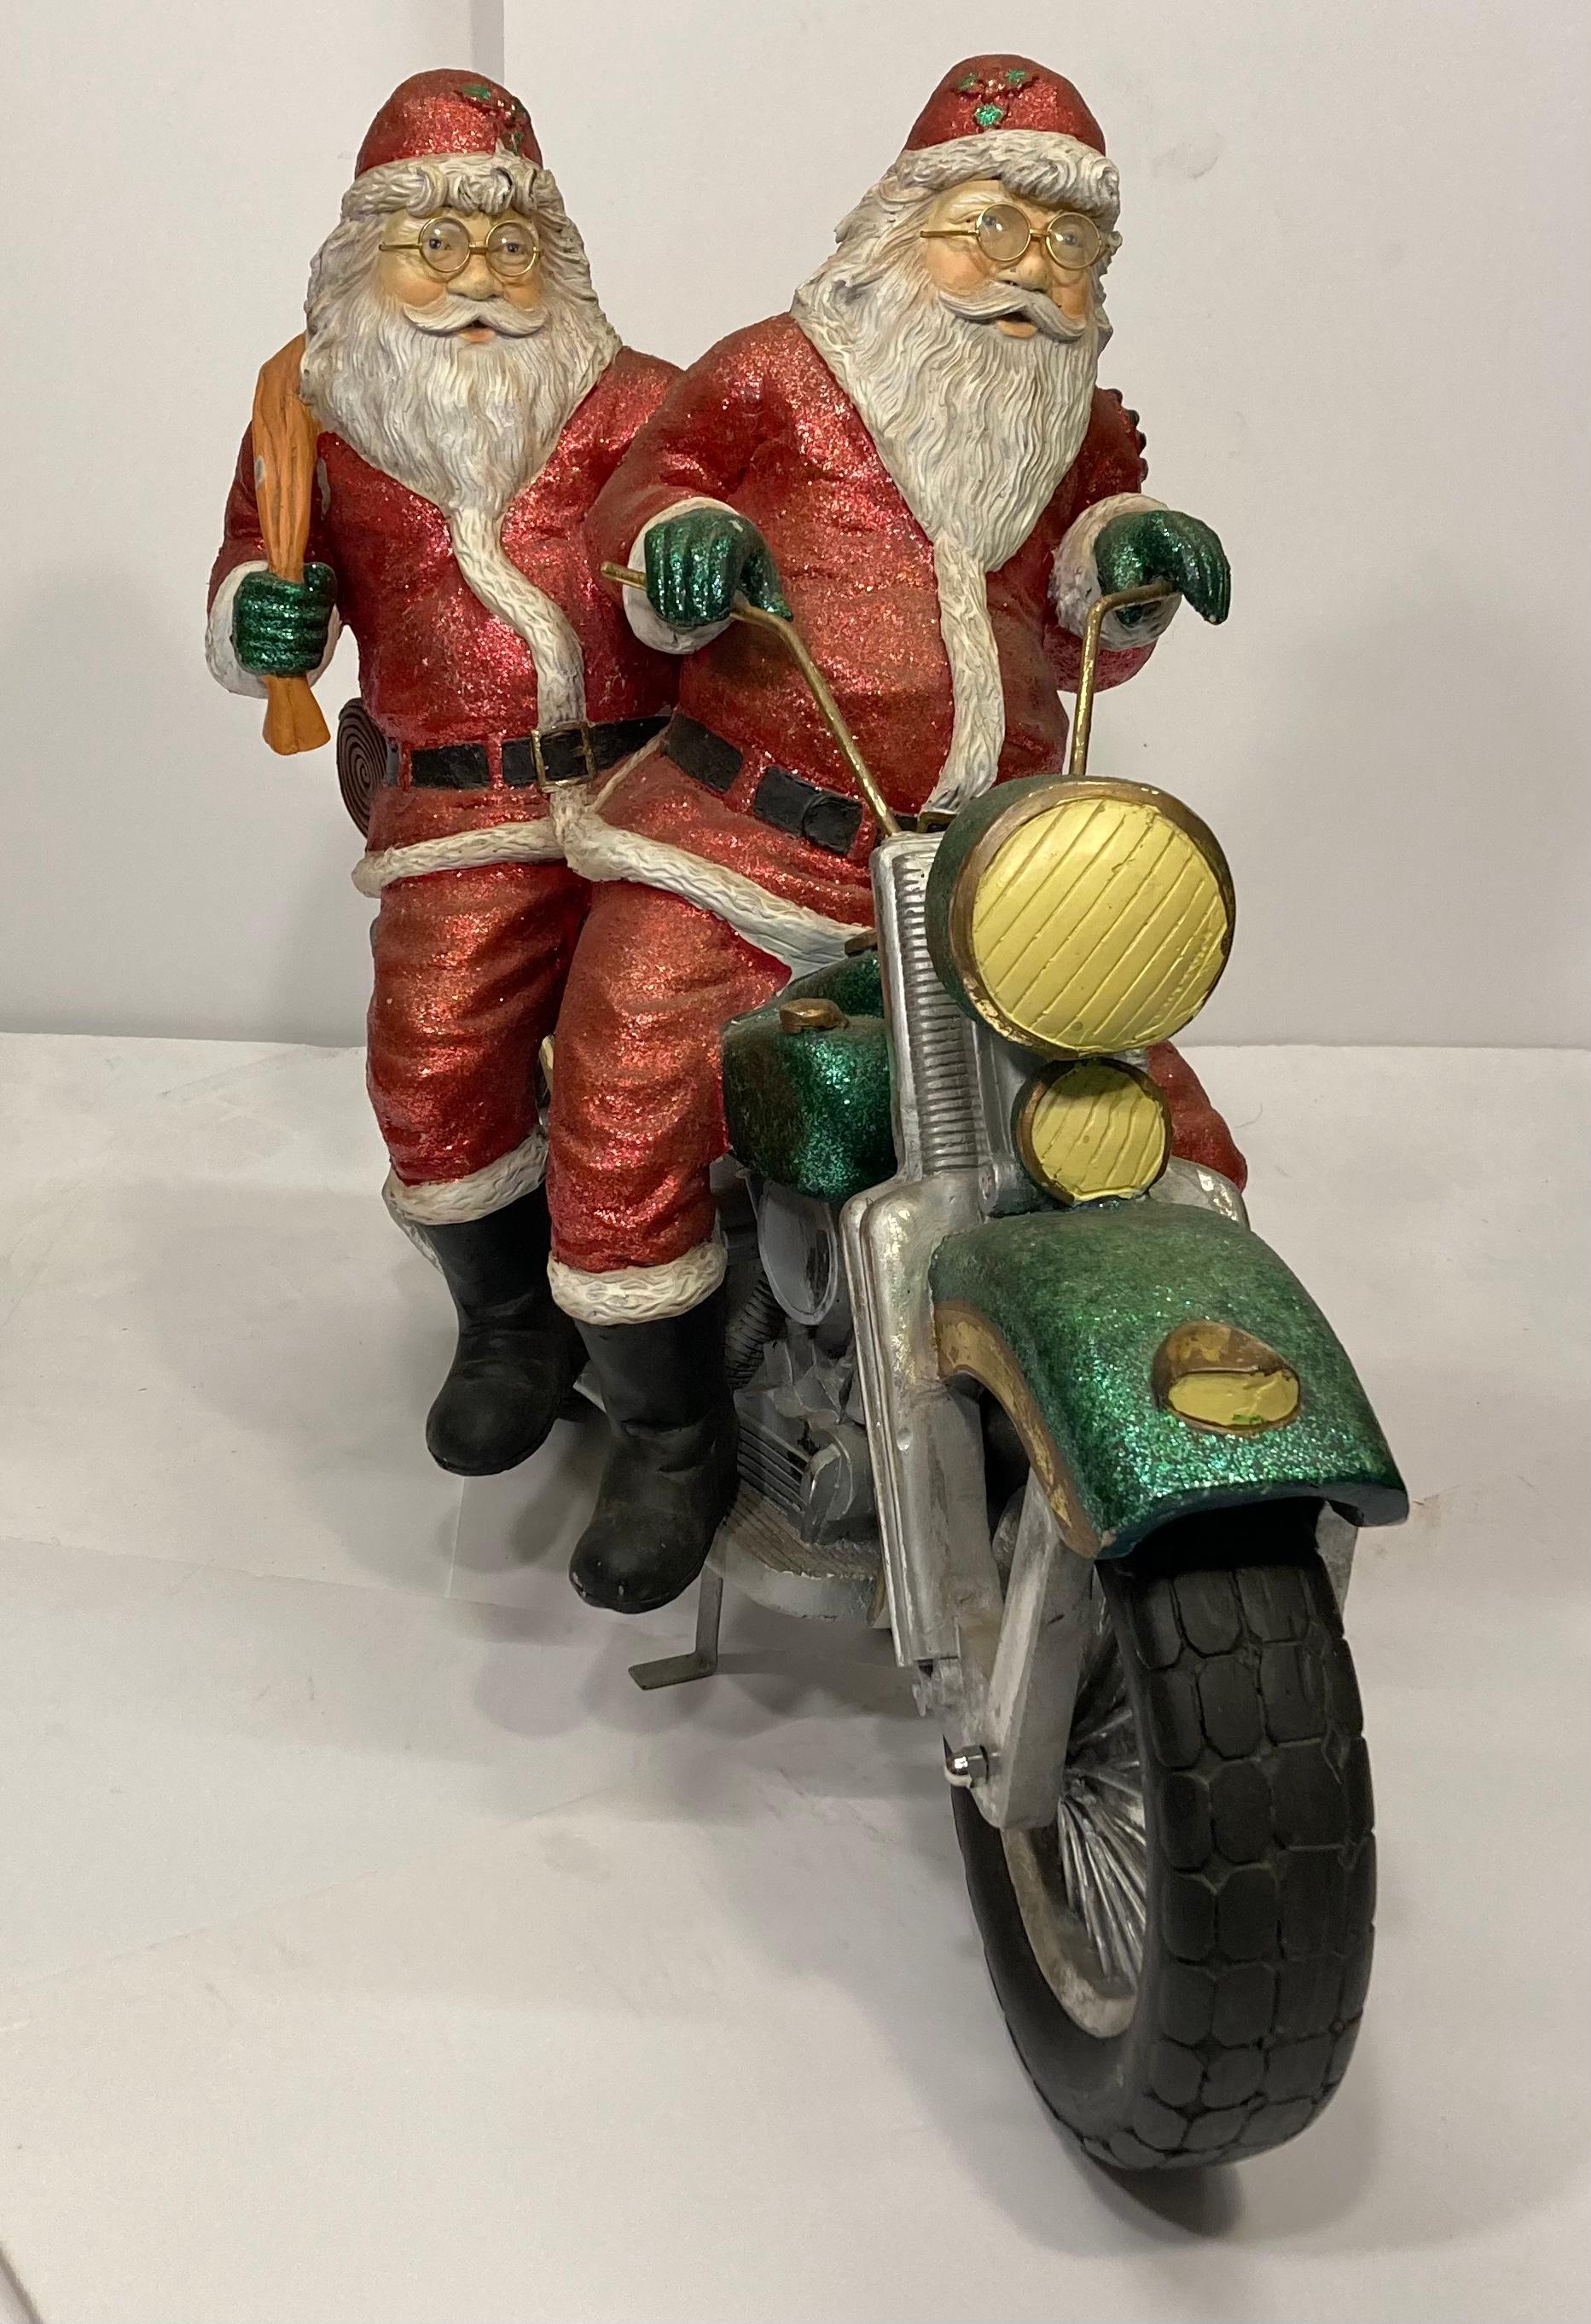 santa on motorcycle figurine